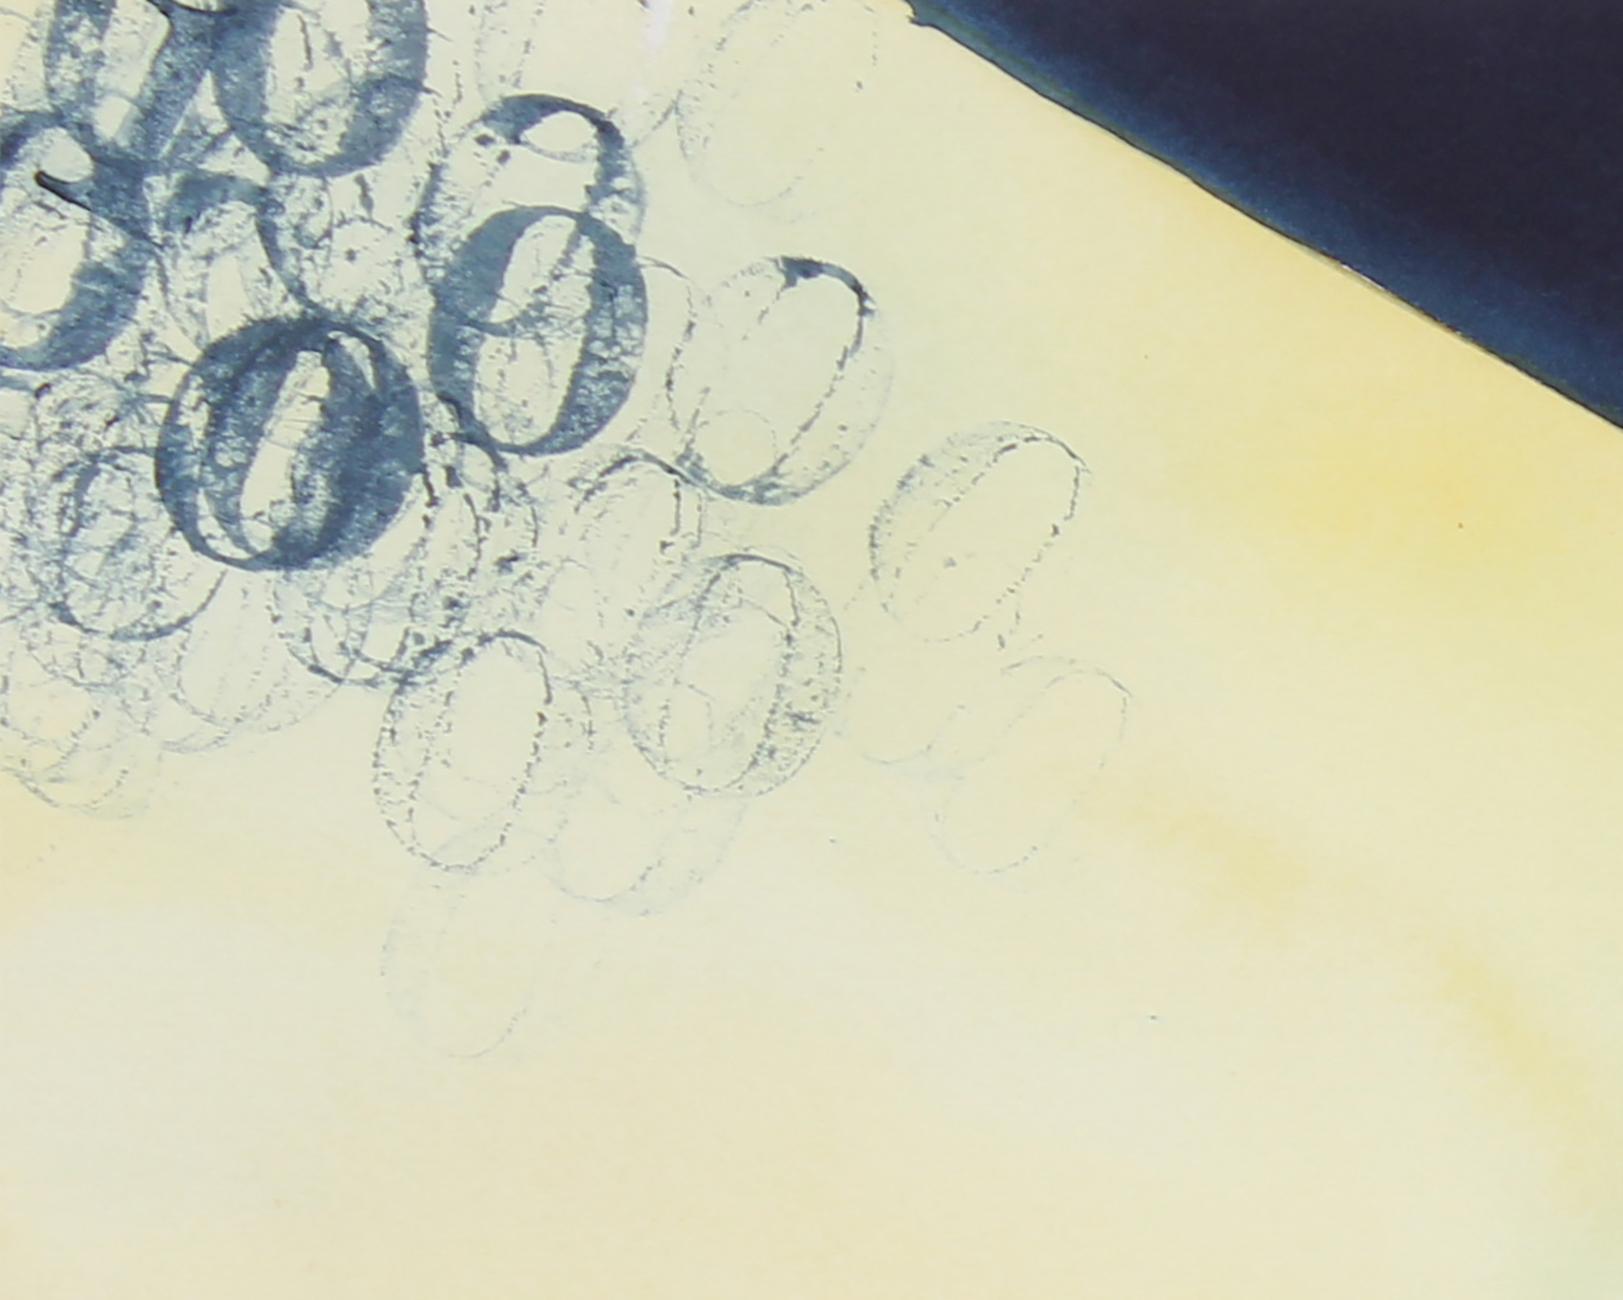 Dieses Aquarell auf Papier aus dem späten 20. Jahrhundert mit abstrahierter Nachtszene in Blau und Gelb stammt von dem nordkalifornischen Künstler Hugh Wiley (1922-2013). Wiley studierte an der Pennsylvania Academy of the Fine Arts und in